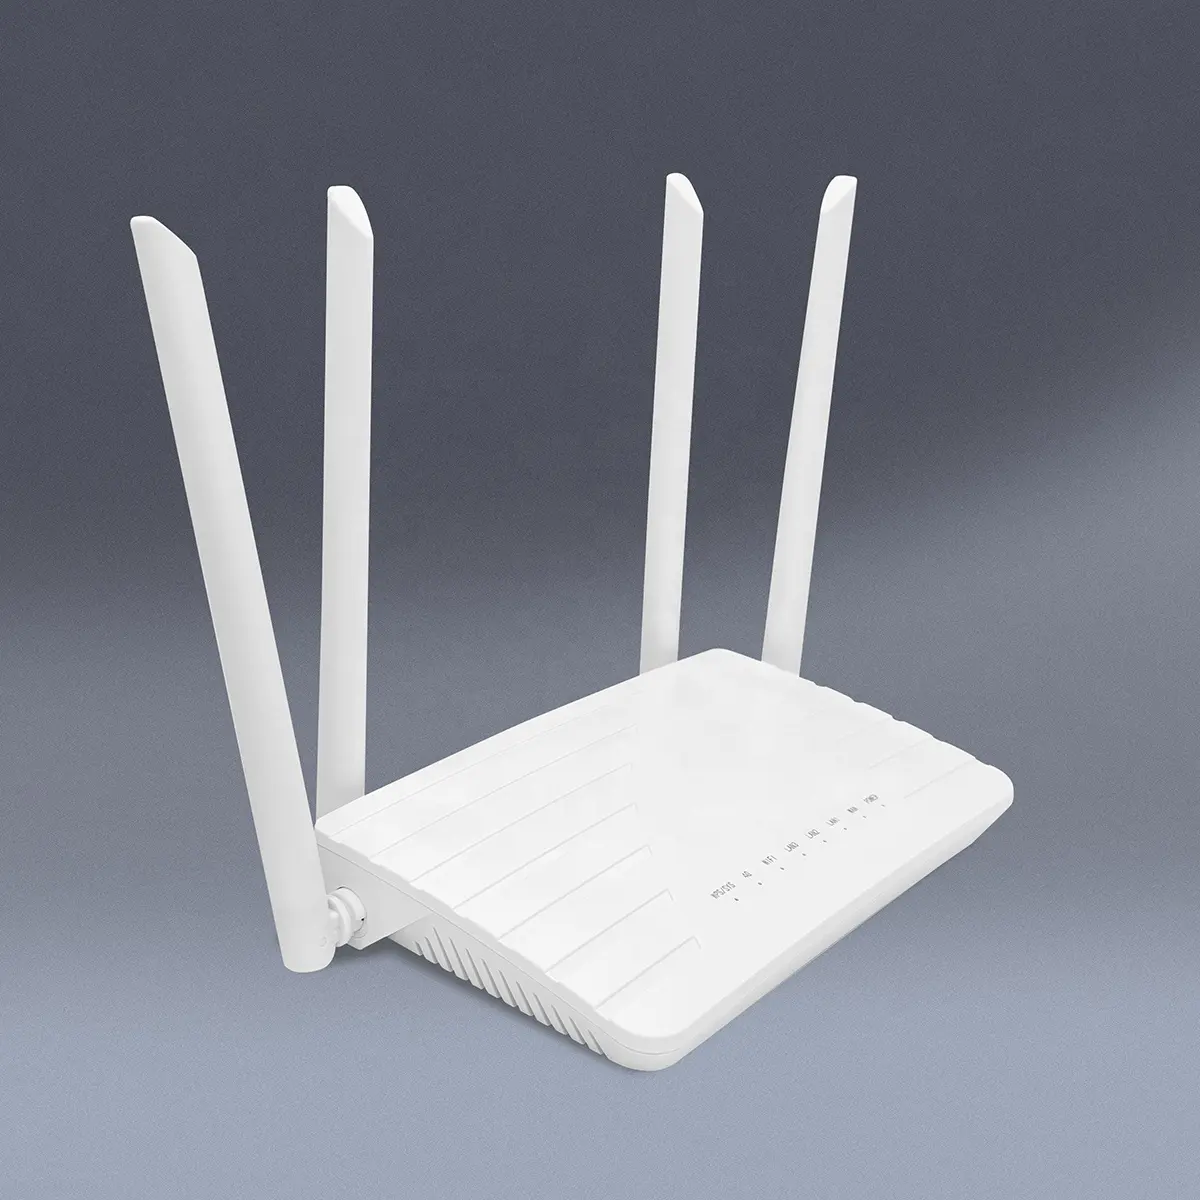 Router wifi lte 4g con slot per sim card no pppoe adsl richiesto sposta ovunque 300m wifi 150m lte download